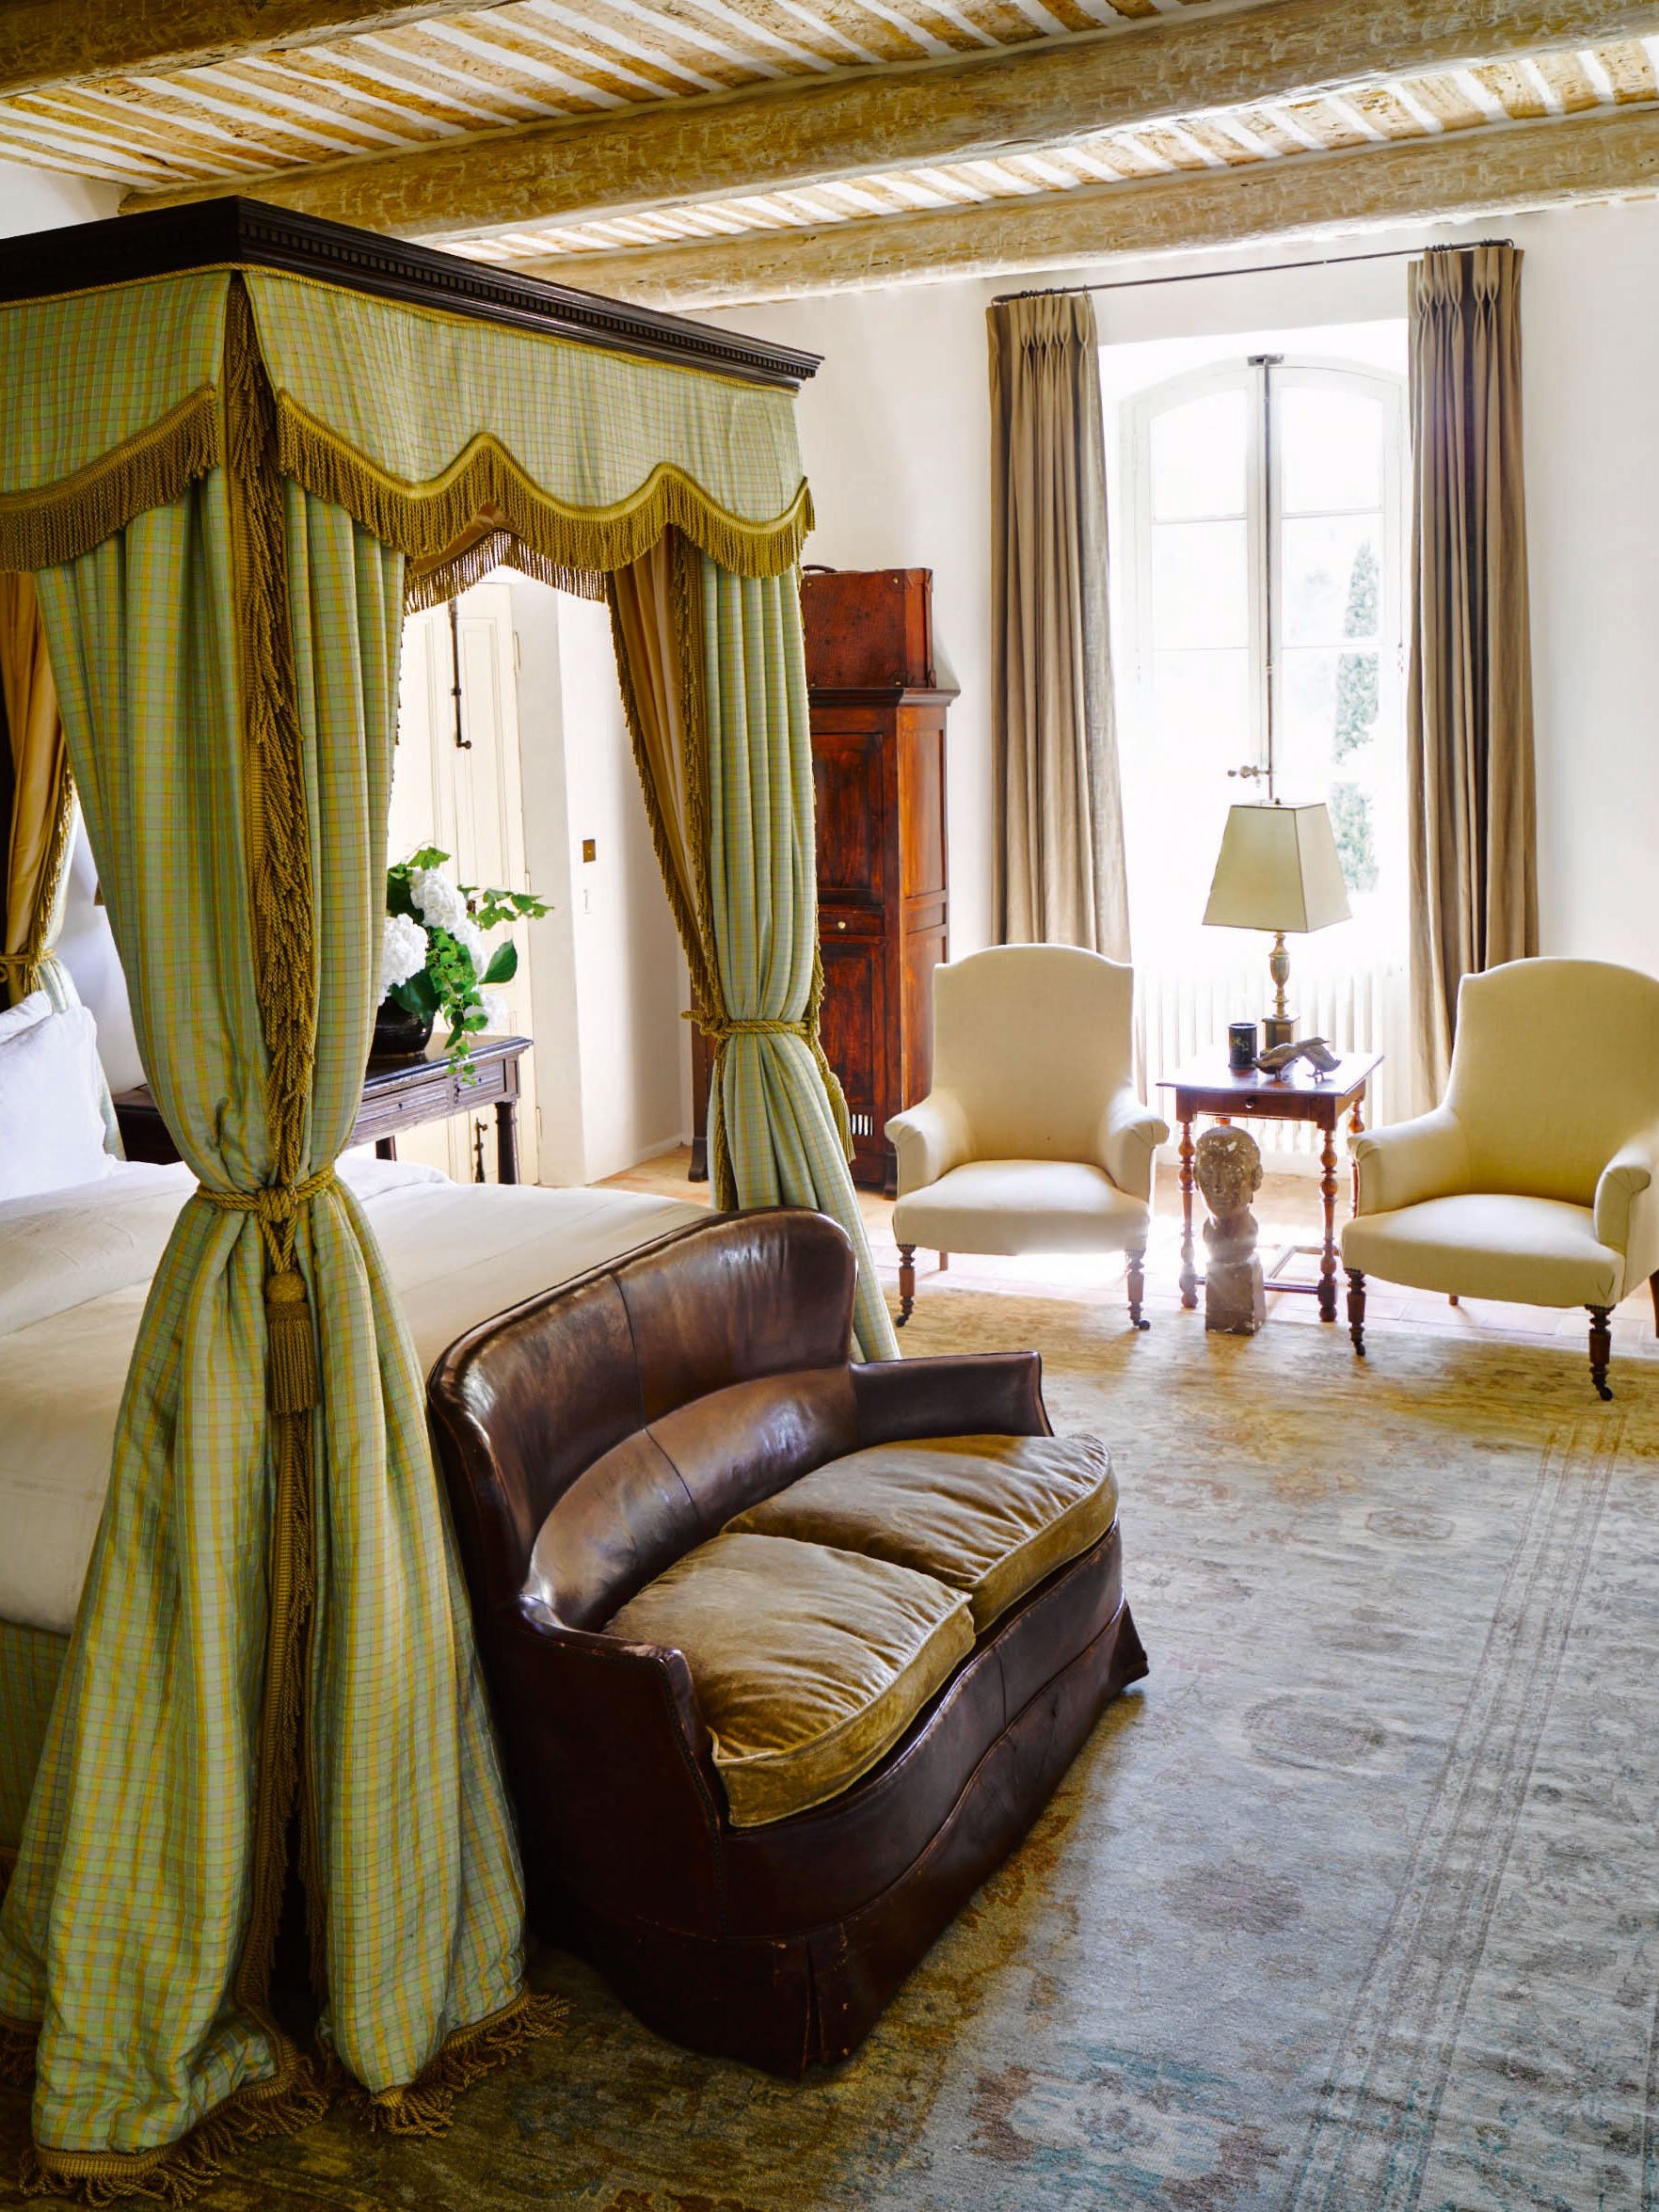 Be my Guest: In der Grand-mère-Suite steht ein traumhaftes altes Himmelbett.